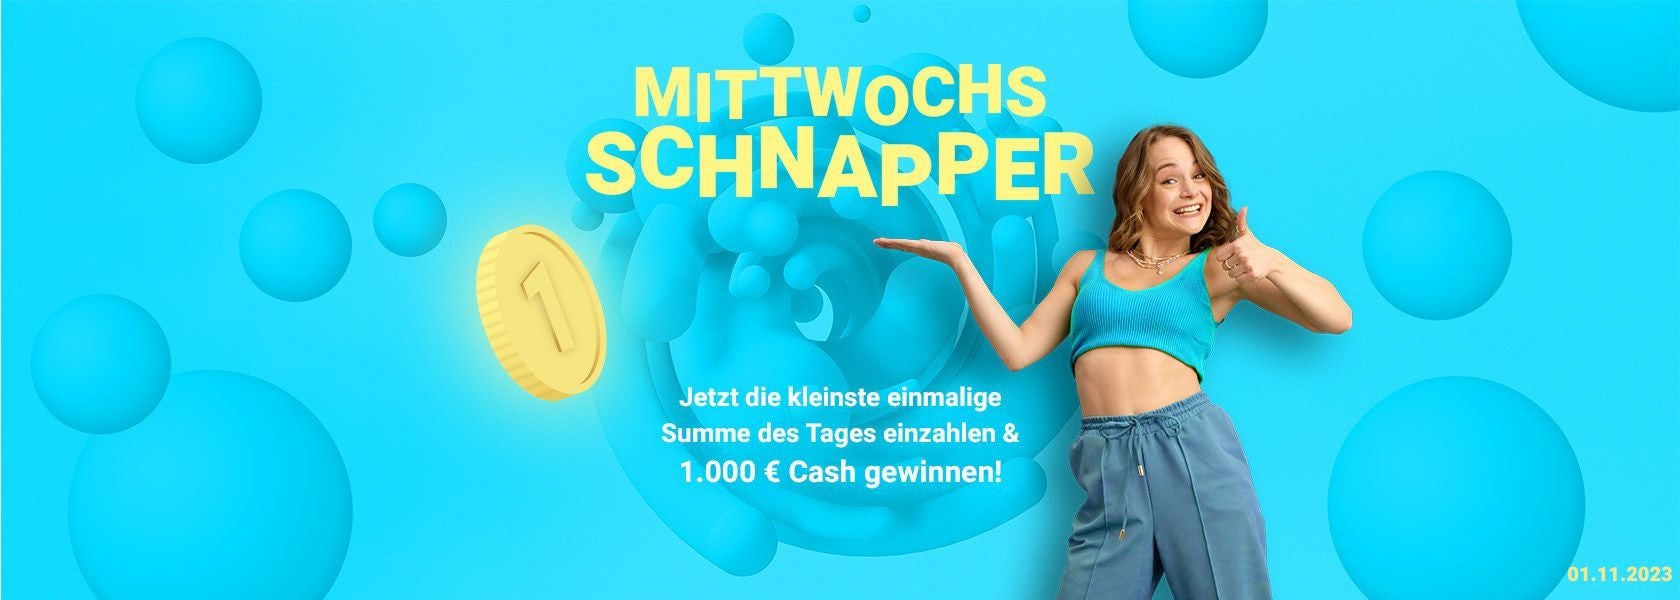 mittwochs-schnapper-bbo-011123